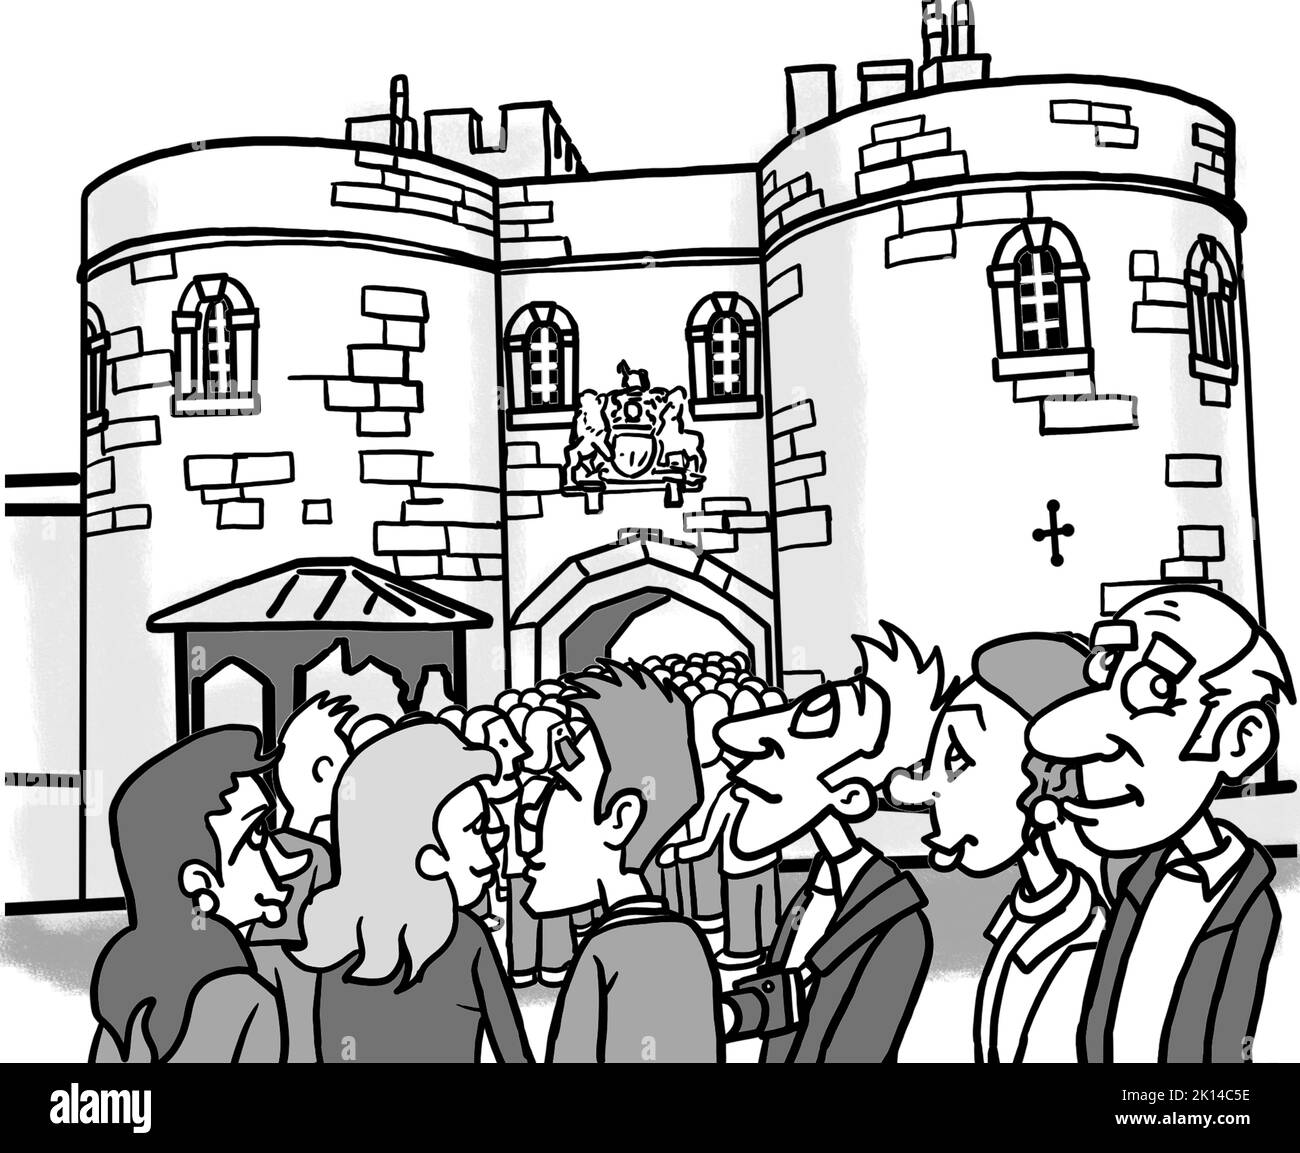 Dessin animé Gretscale montrant une file d'attente de touristes attendant de visiter le célèbre palais historique de Londres, la Tour de Londres sur la rive nord de la Tamise. Banque D'Images